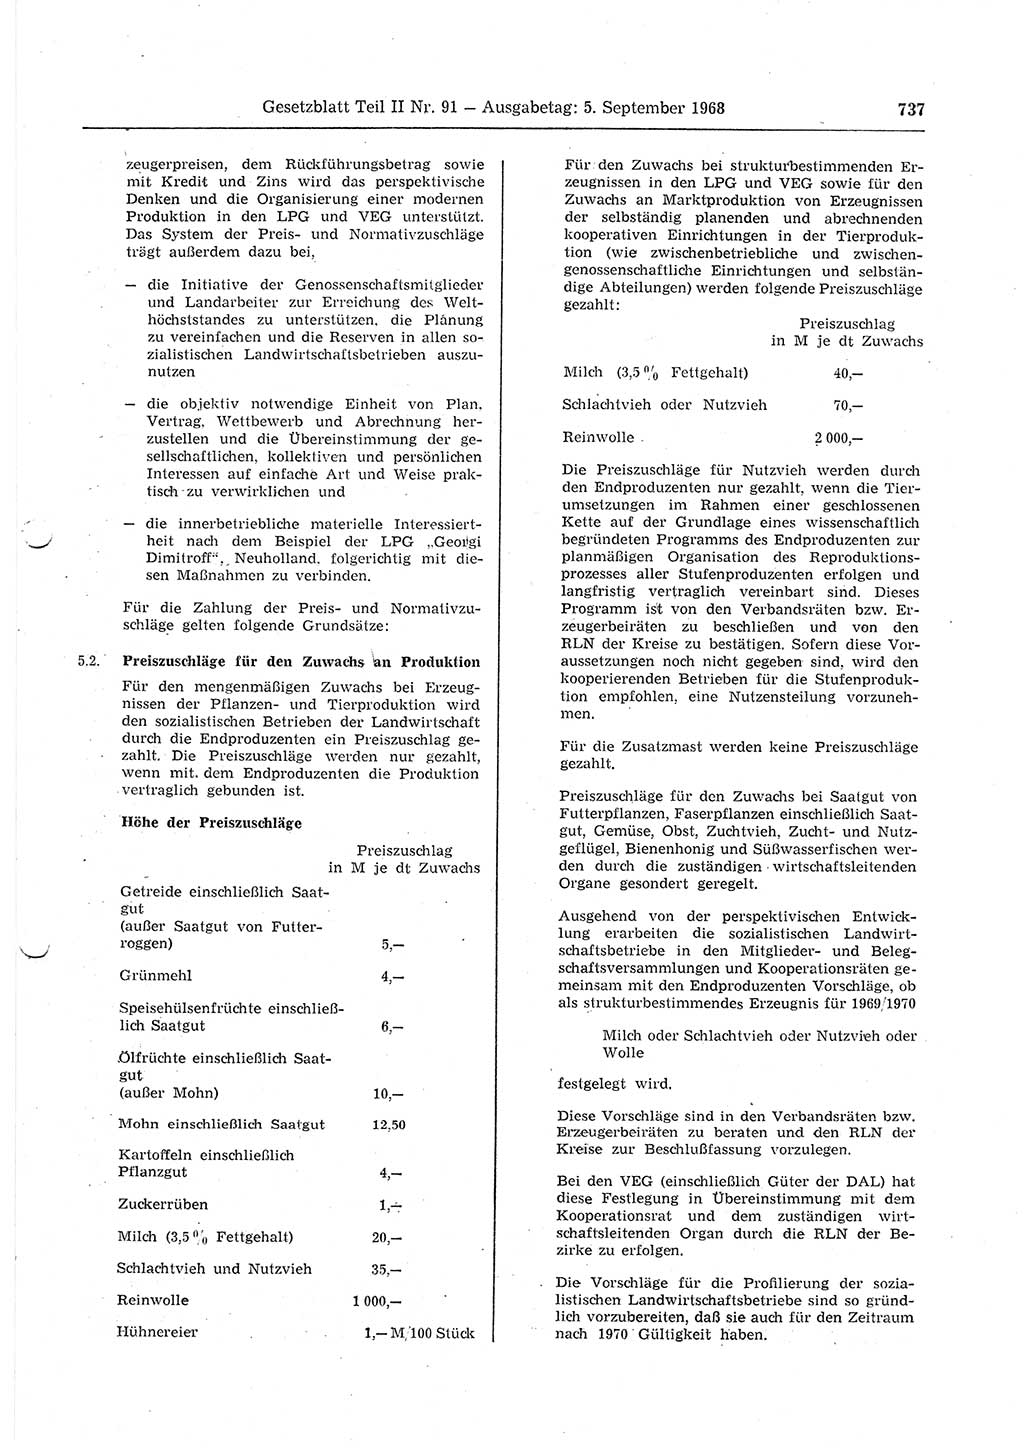 Gesetzblatt (GBl.) der Deutschen Demokratischen Republik (DDR) Teil ⅠⅠ 1968, Seite 737 (GBl. DDR ⅠⅠ 1968, S. 737)